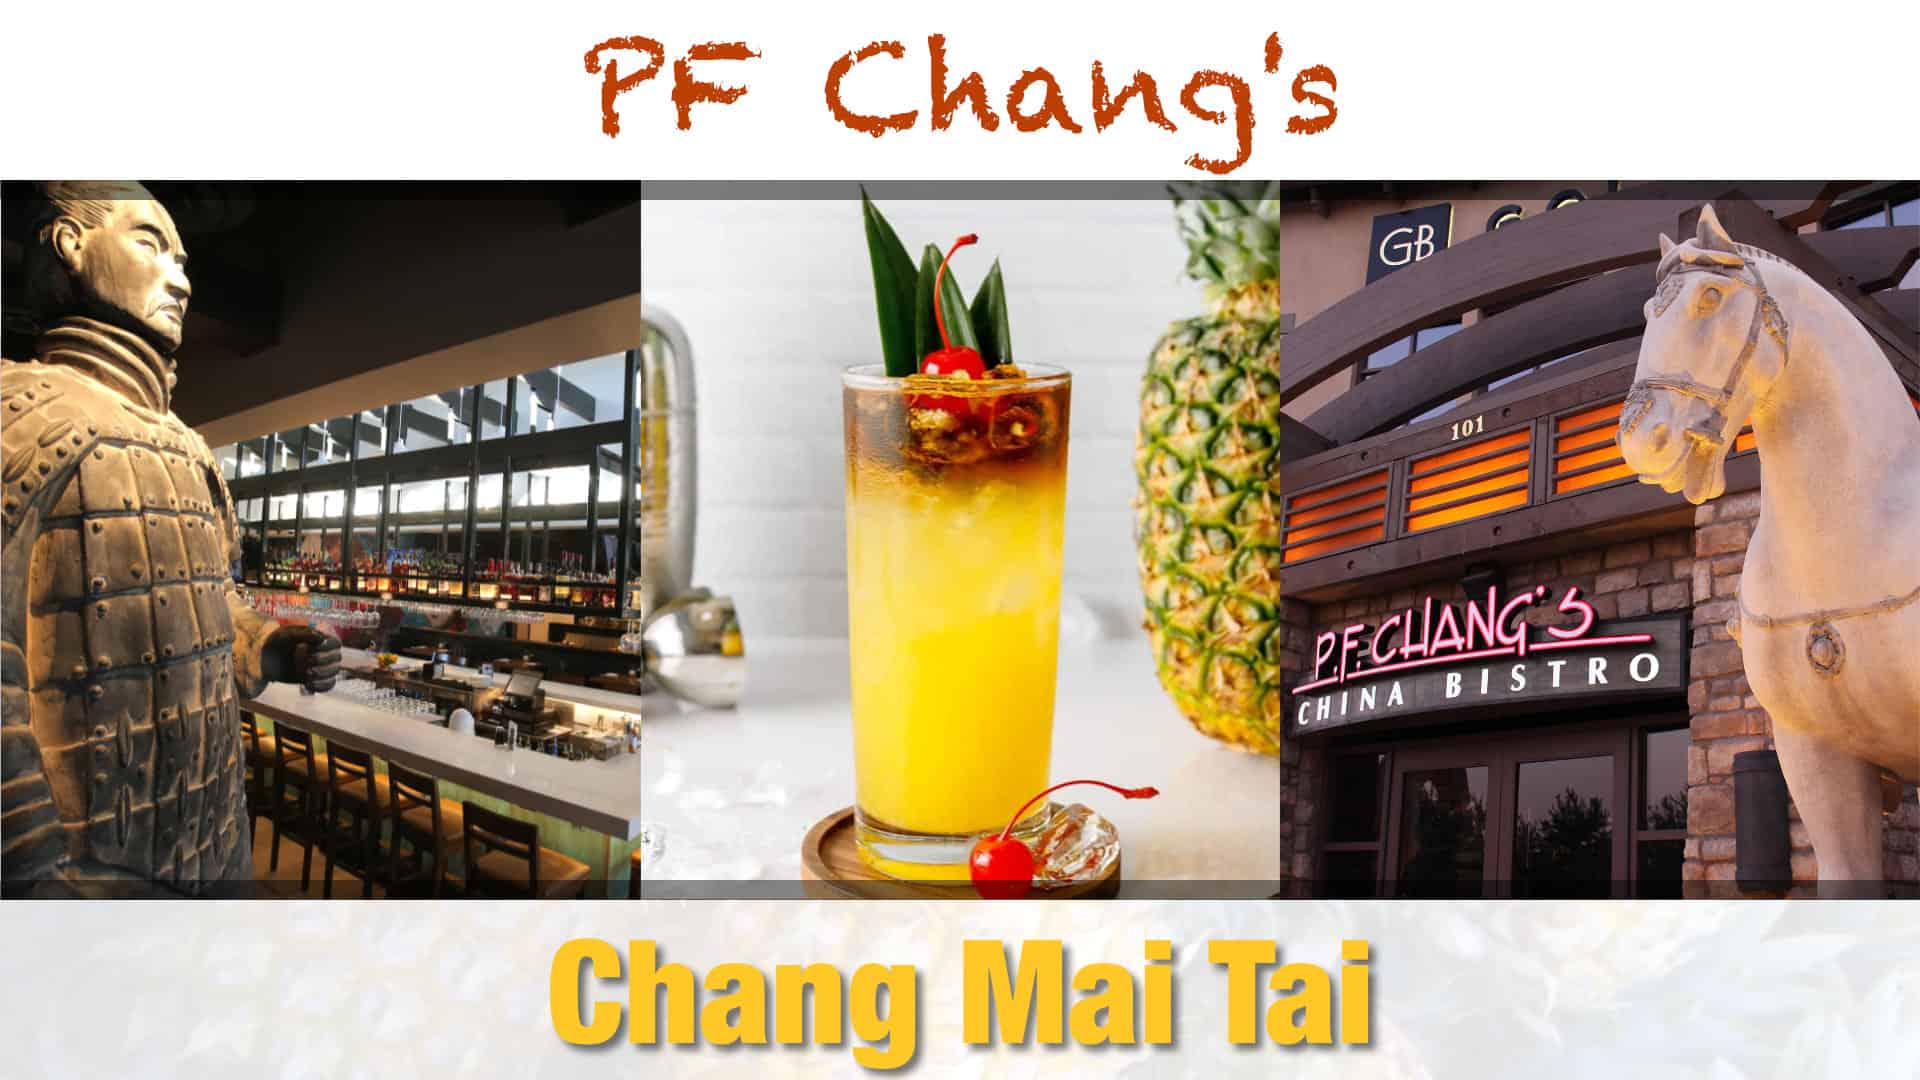 PF Chang’s Chang Mai Tai Recipe